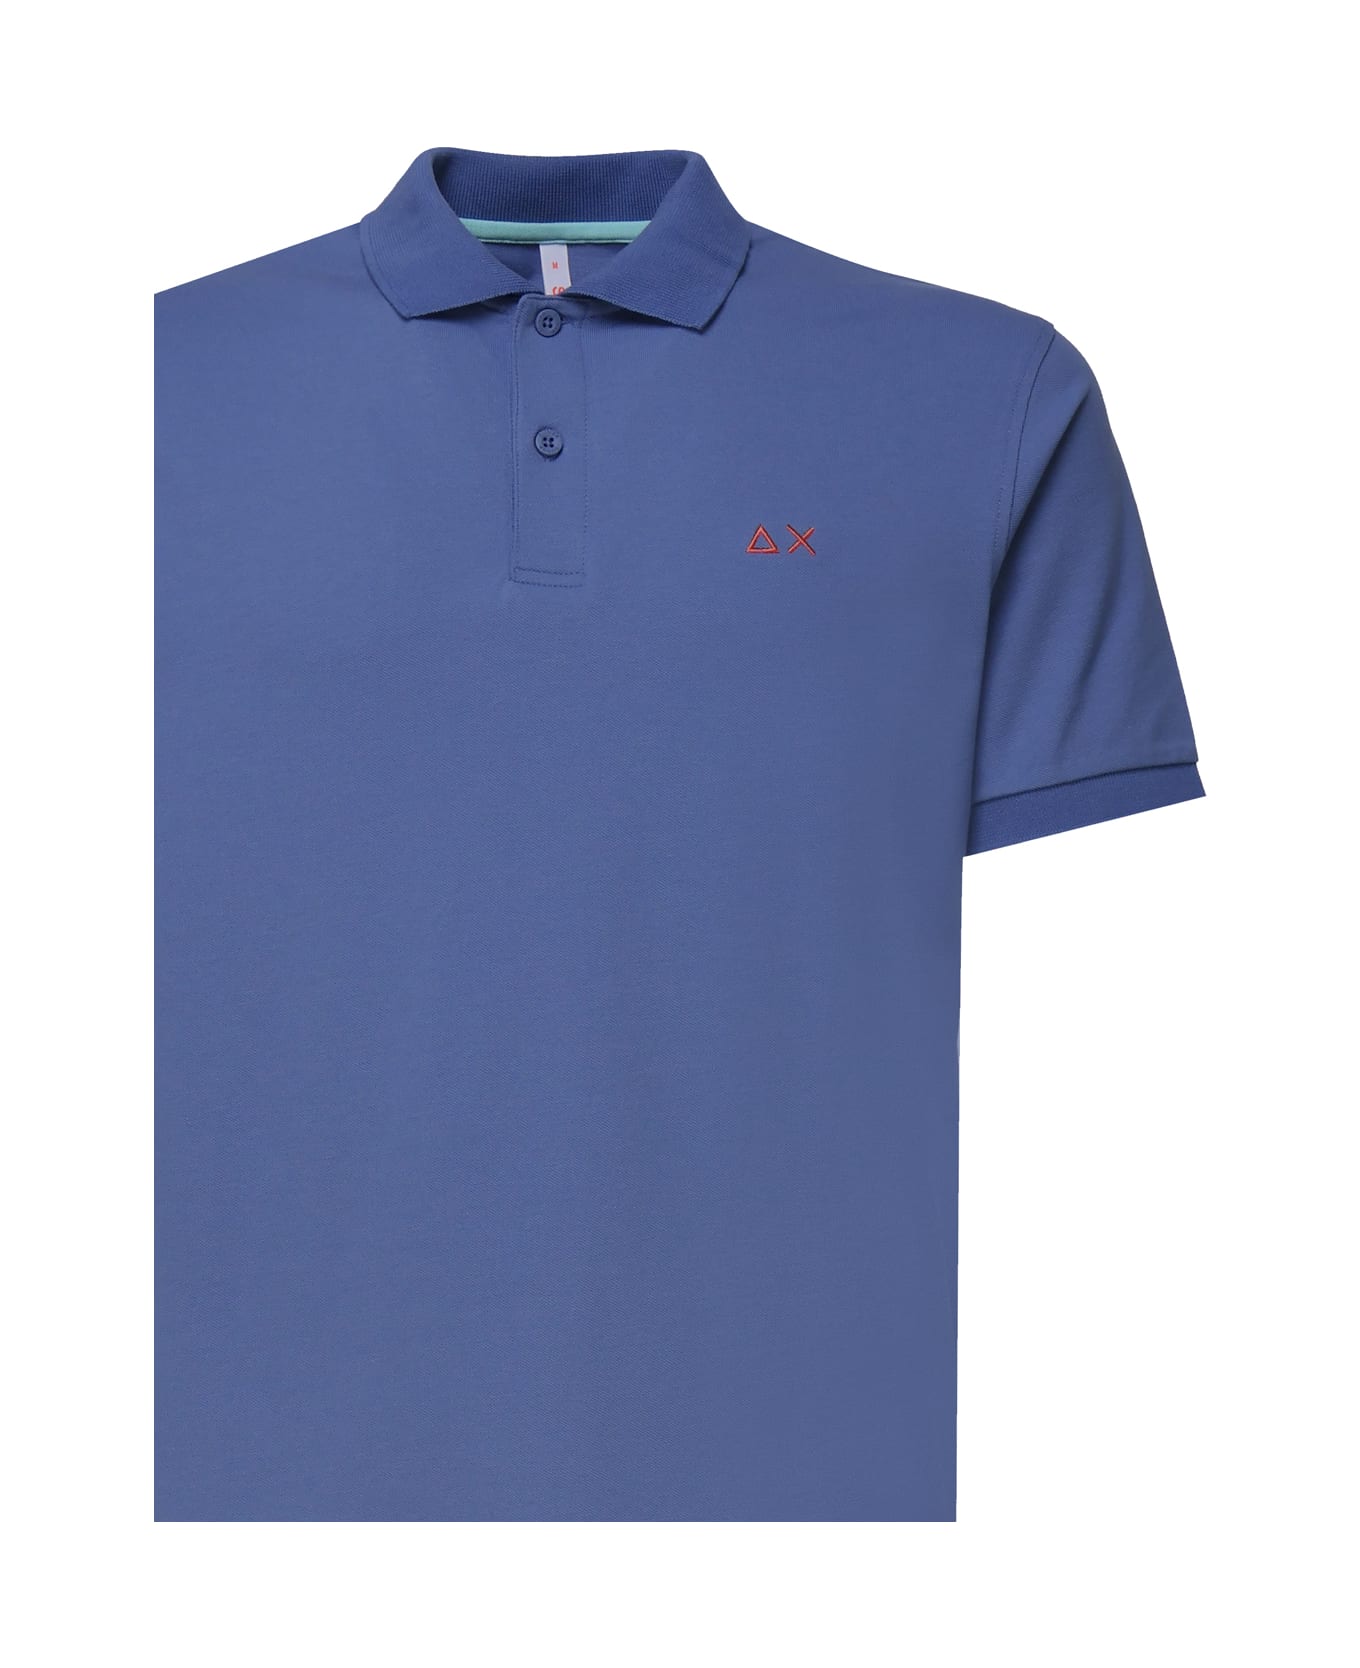 Sun 68 Polo T-shirt In Cotton - Avion Blue